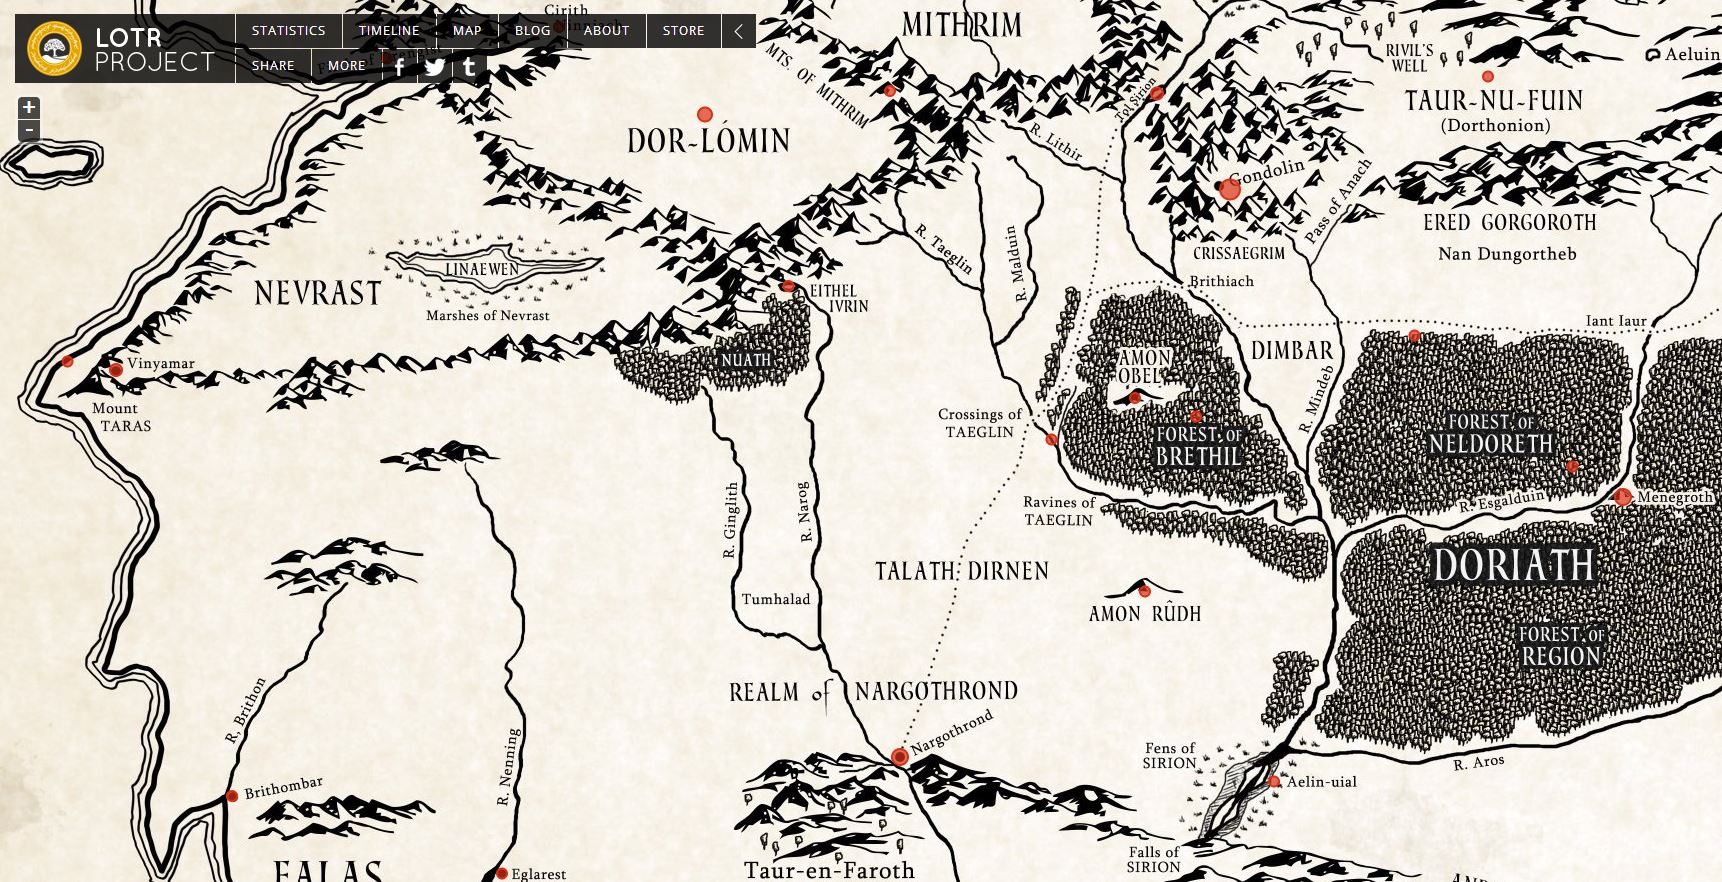 Gemakkelijk Oprichter heel fijn Explore this great interactive map of lost Beleriand